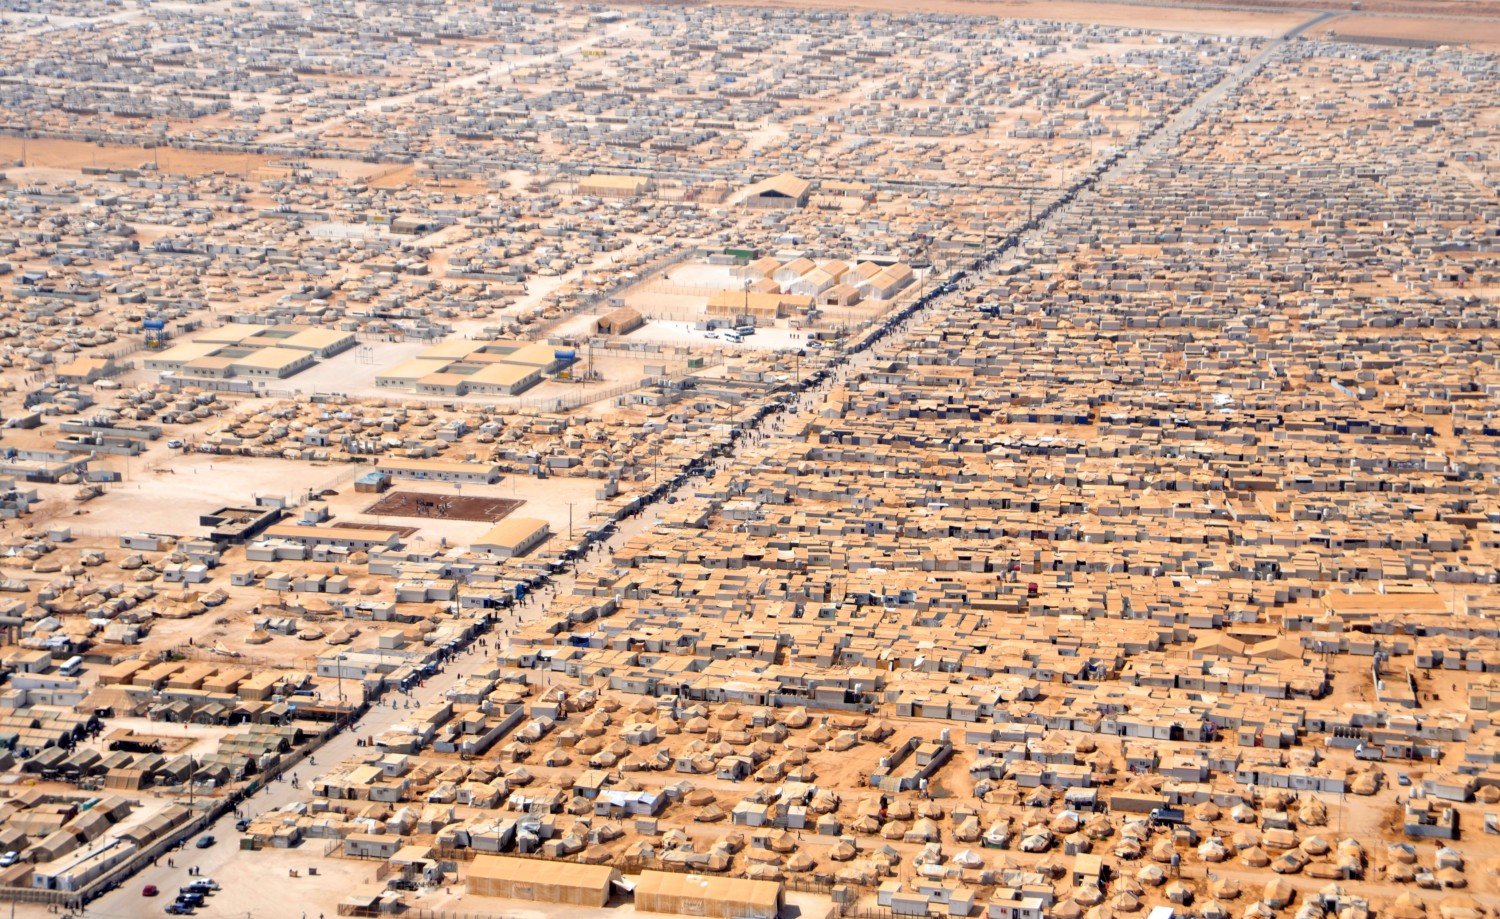 Obóz  Za'atri w Jordanii dla uchodźców z Syrii / fot. U.S. Department of State